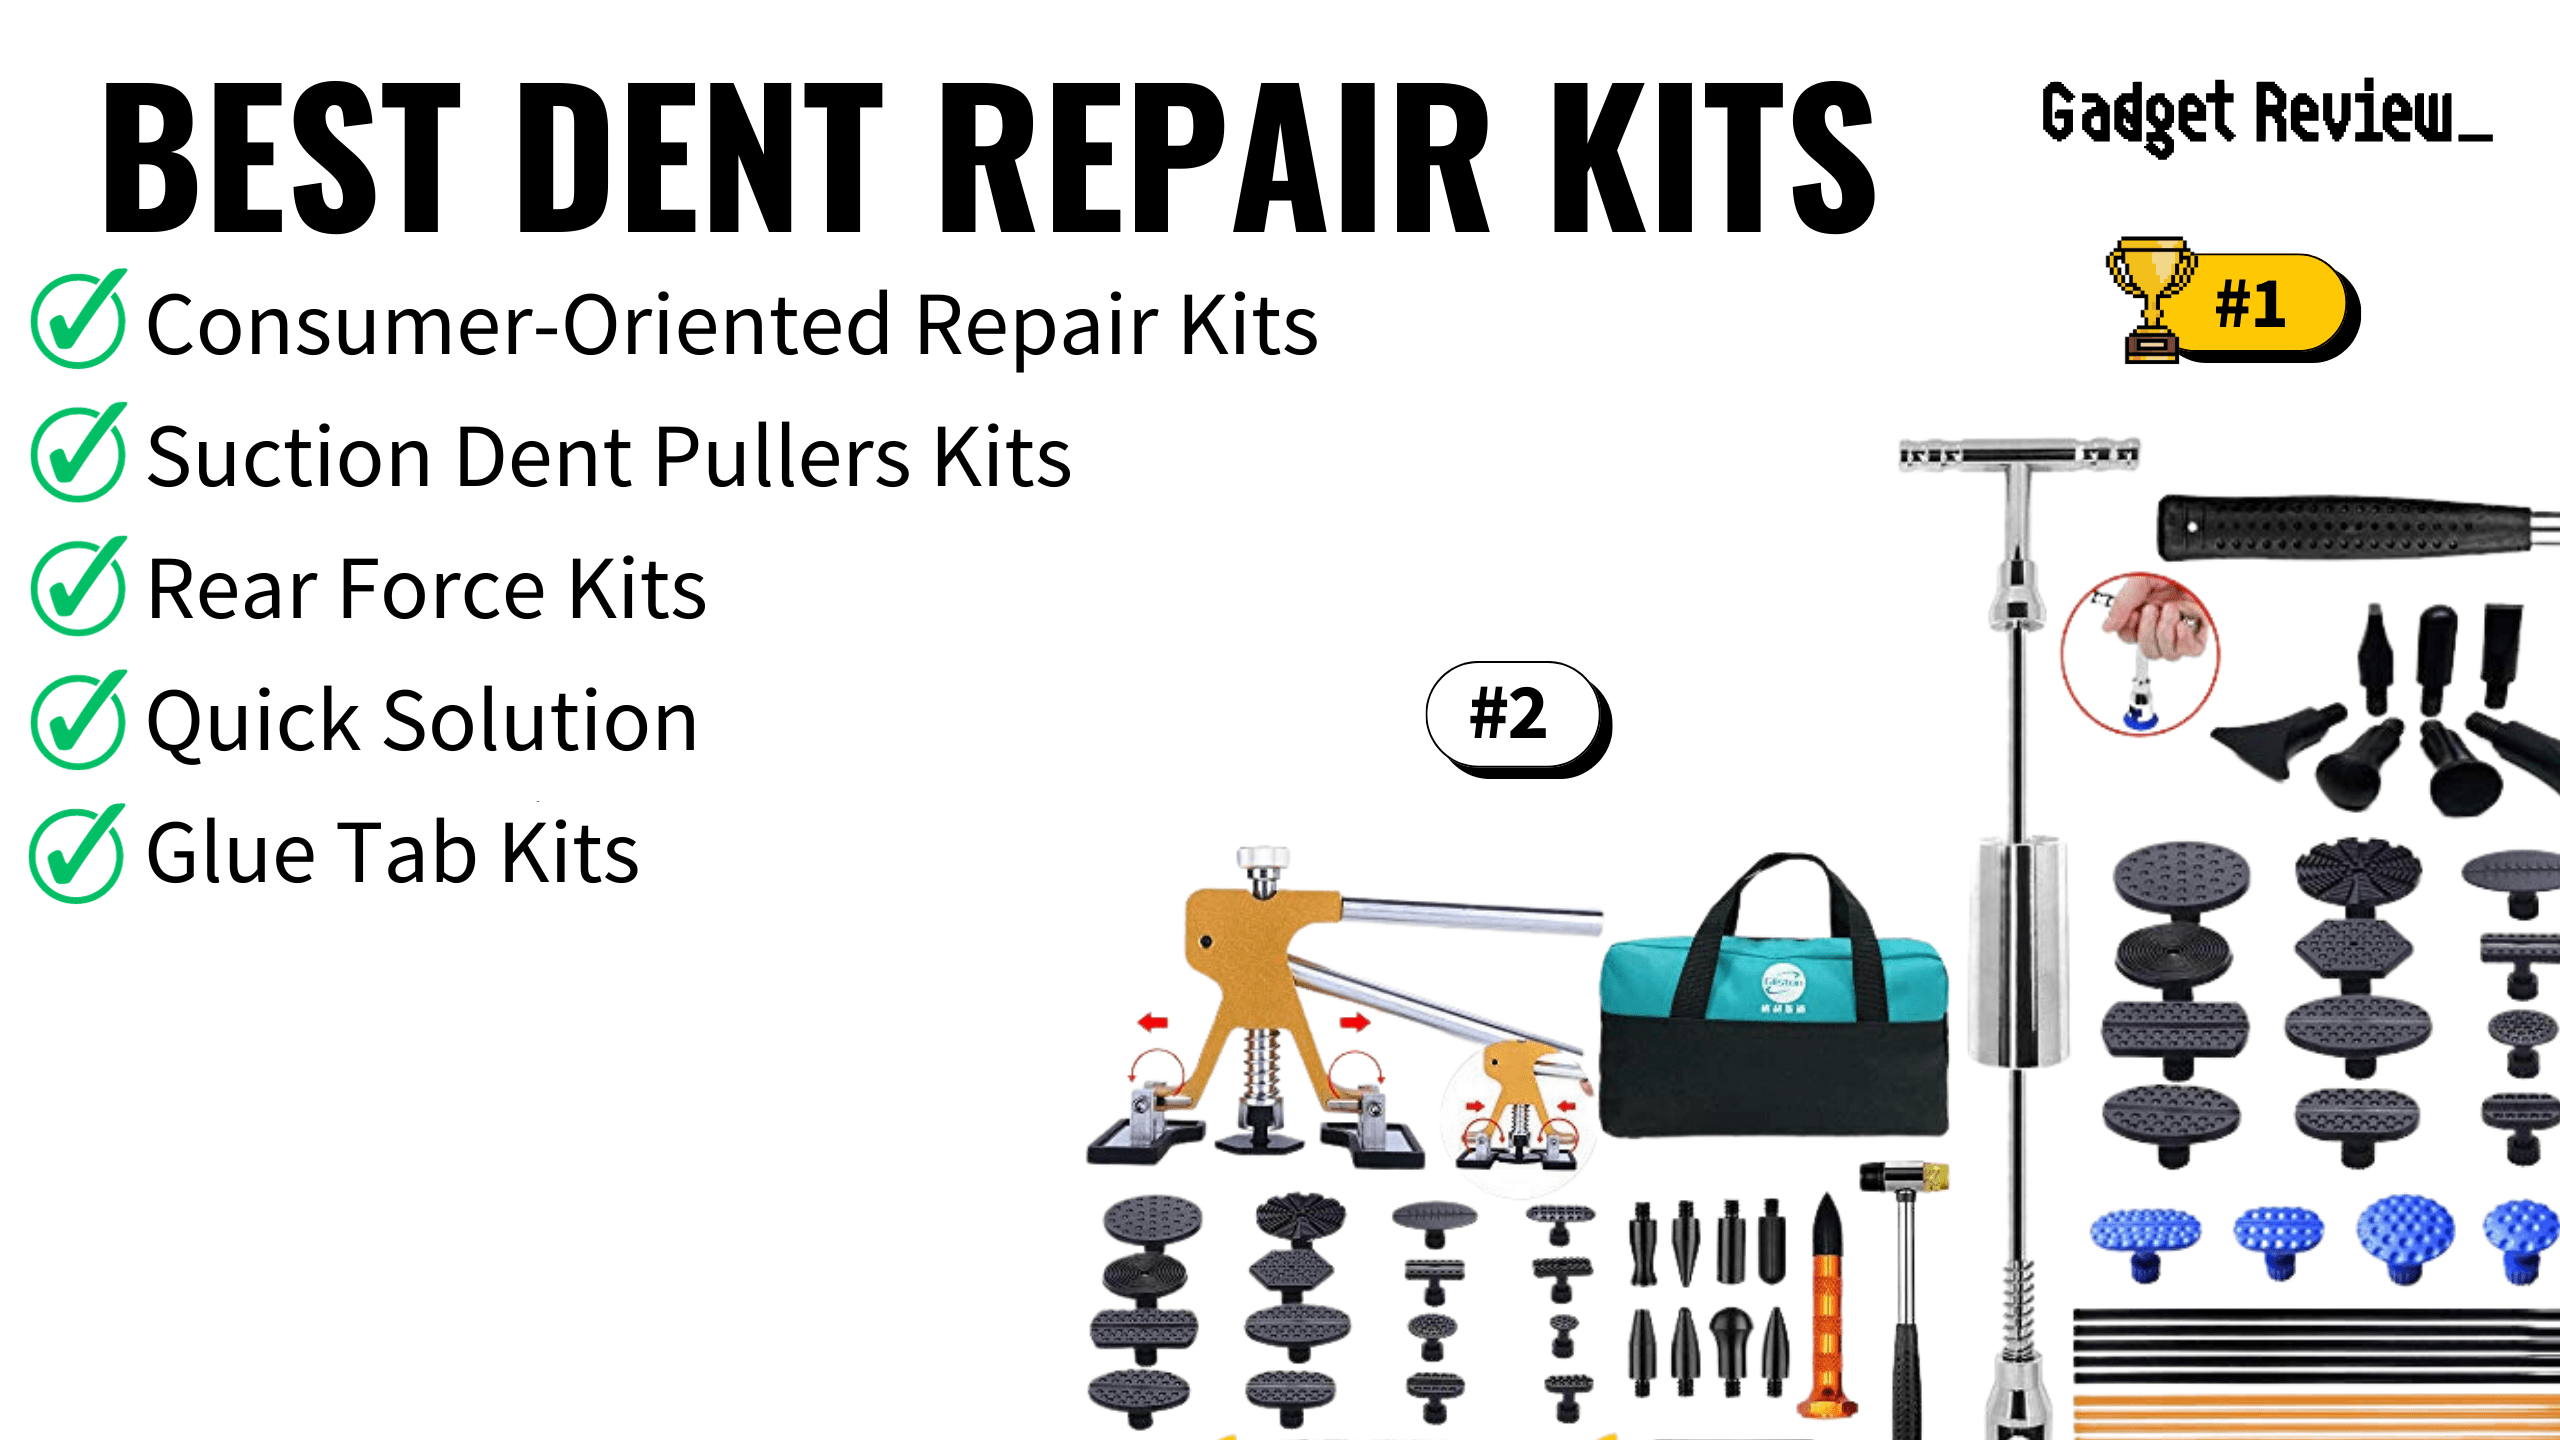 Best Dent Repair Kits